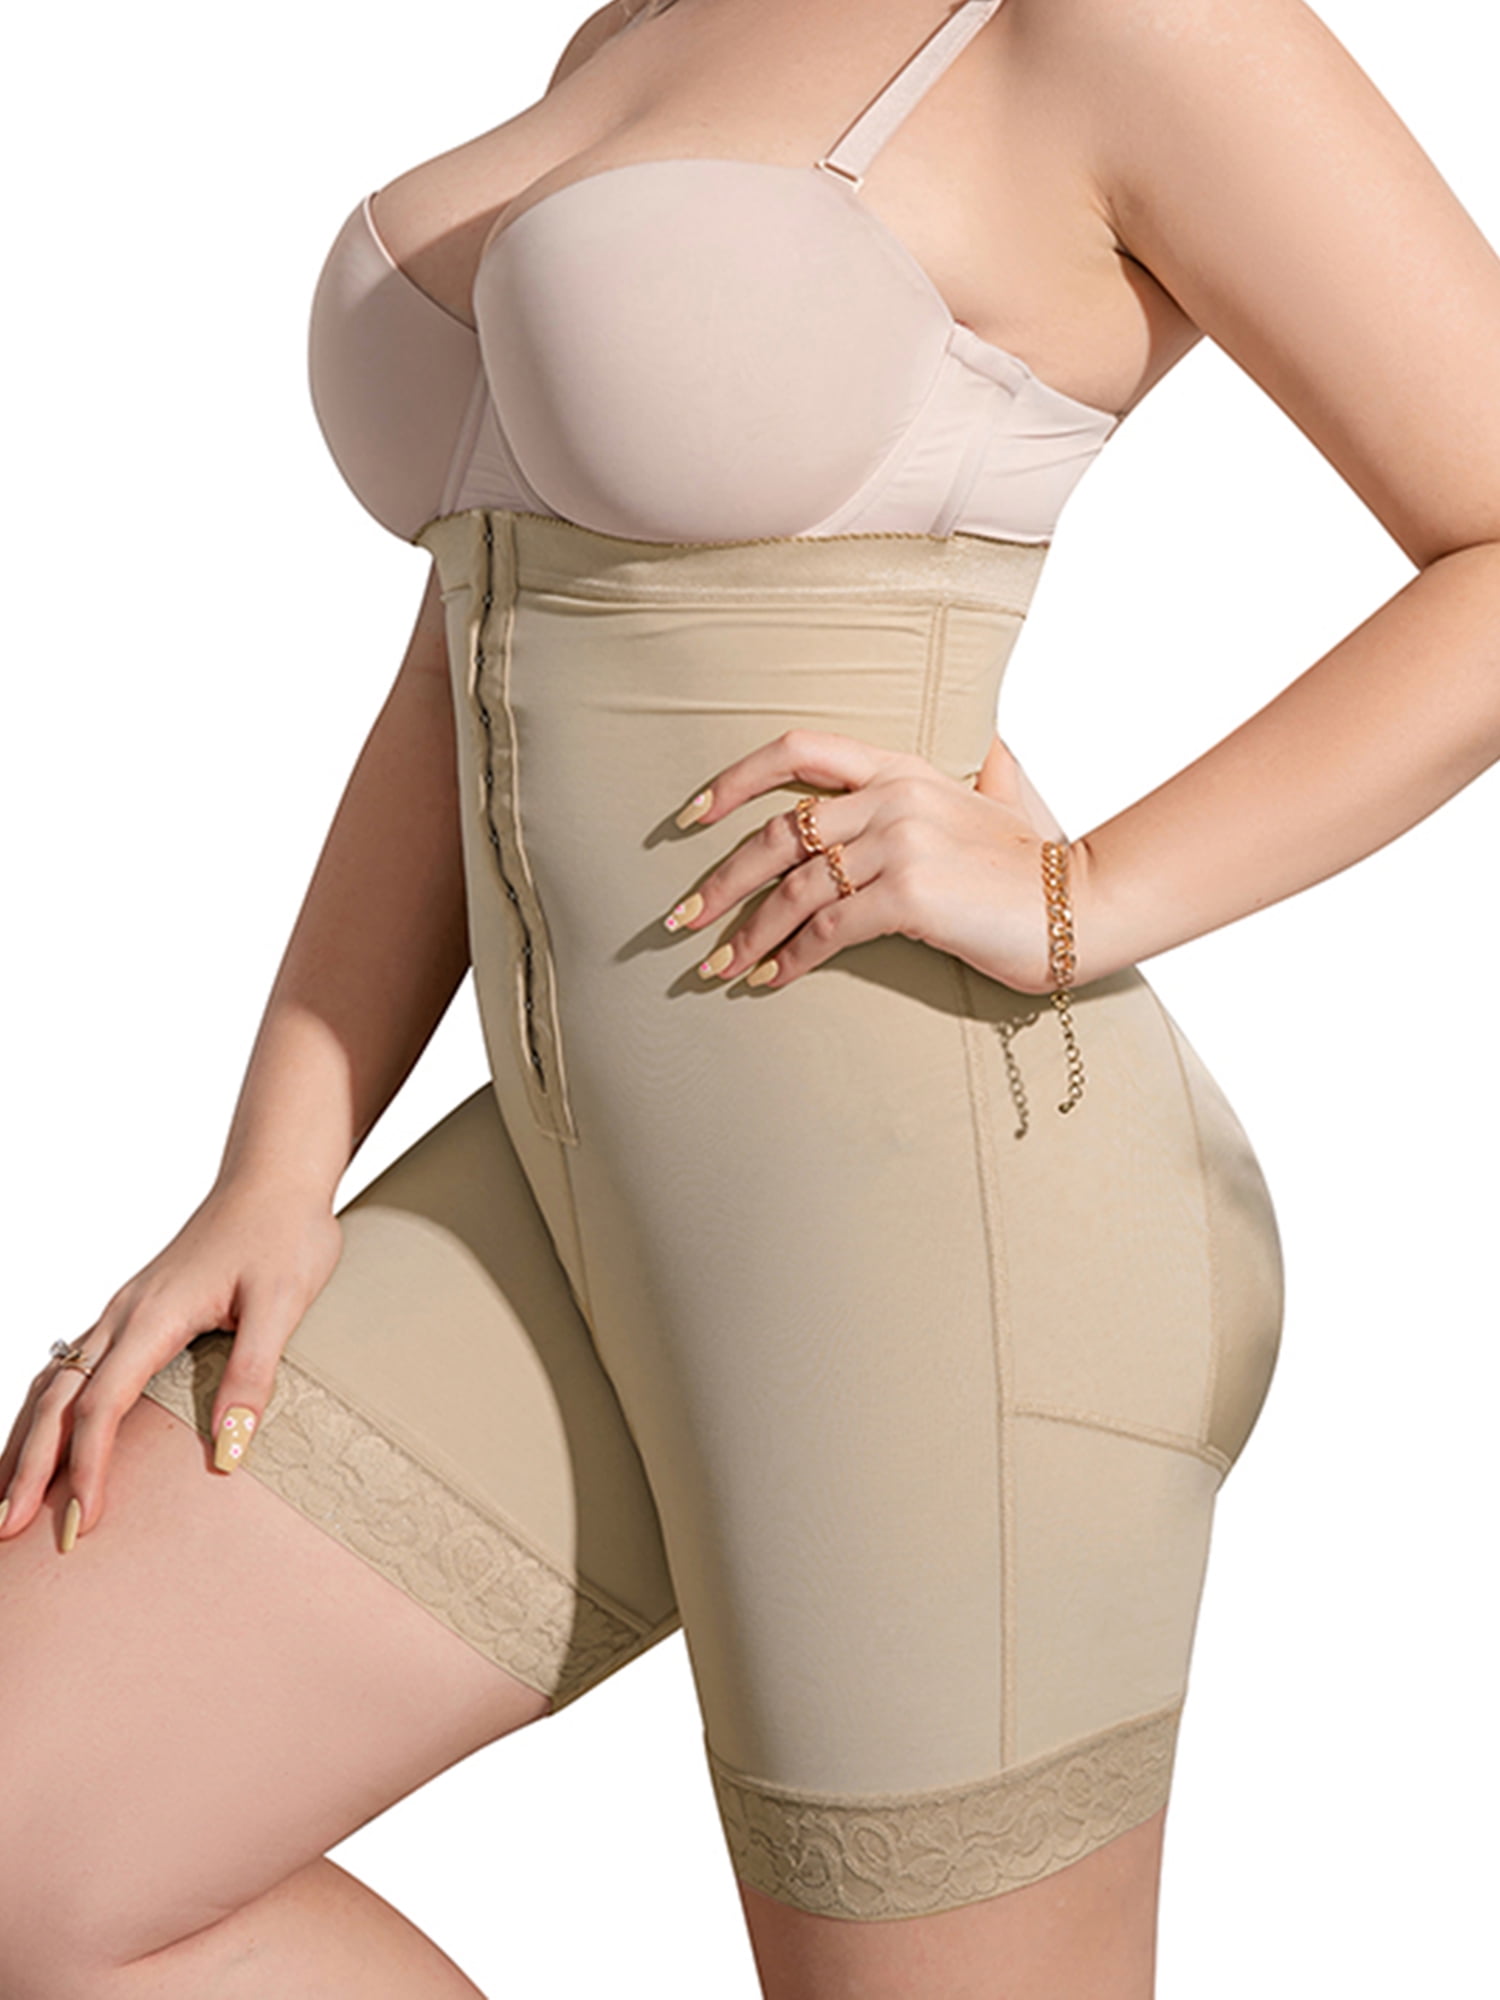 DODOING Thigh Slimmer Shapewear Tummy Control for Women Seamless High Waist Butt Lifter Shaper Shorts 